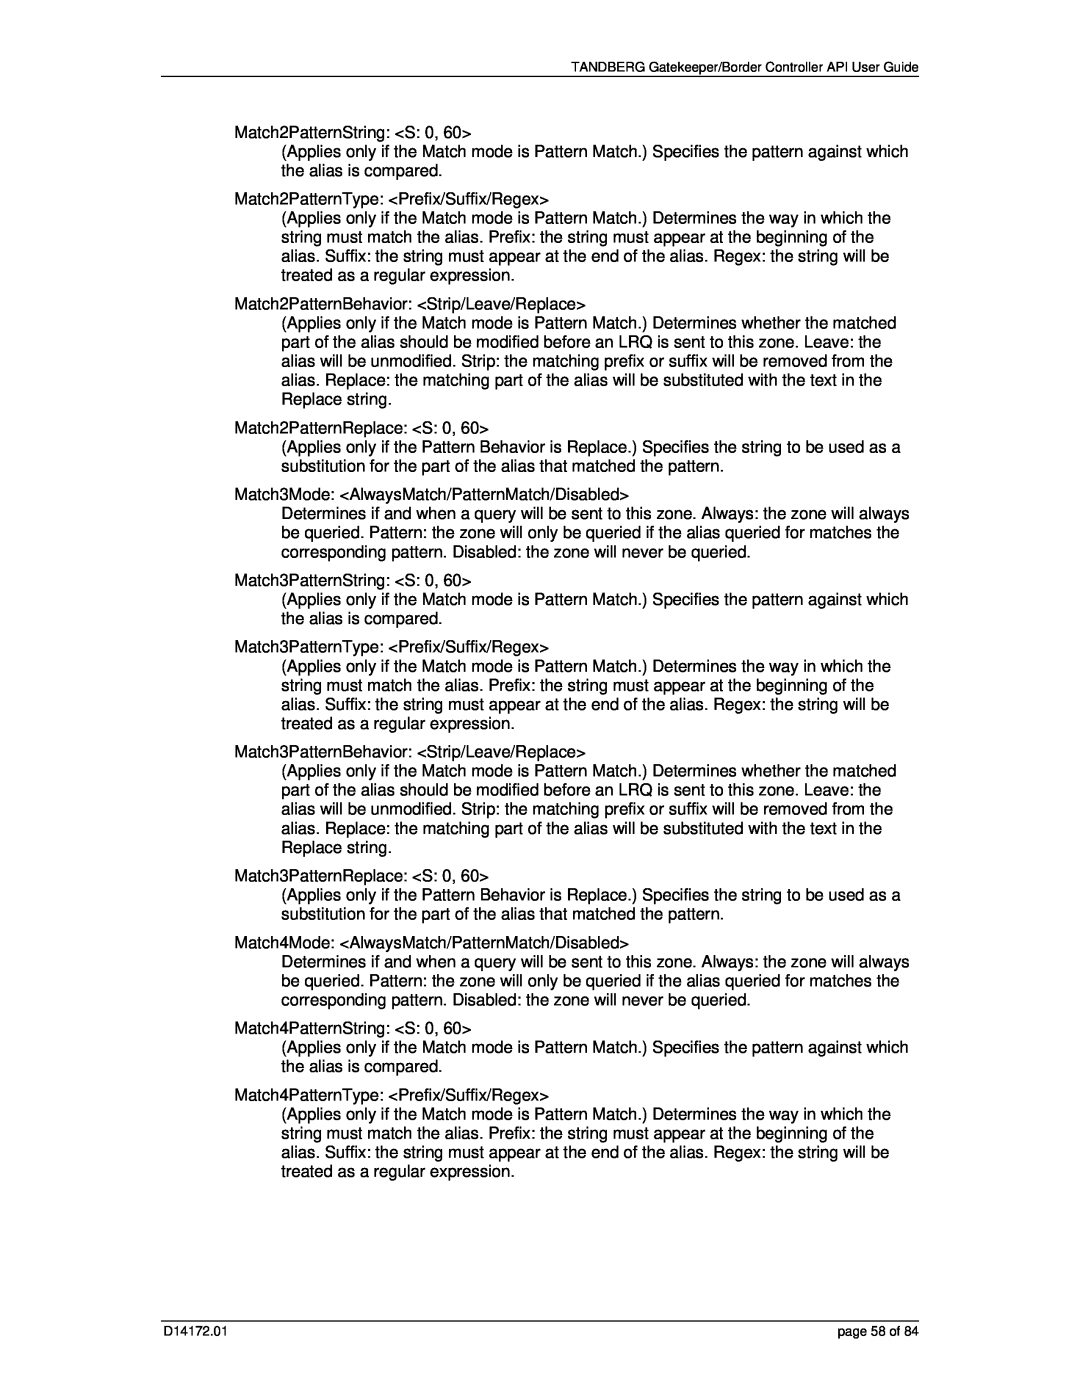 TANDBERG D14172.01 manual page 58 of 